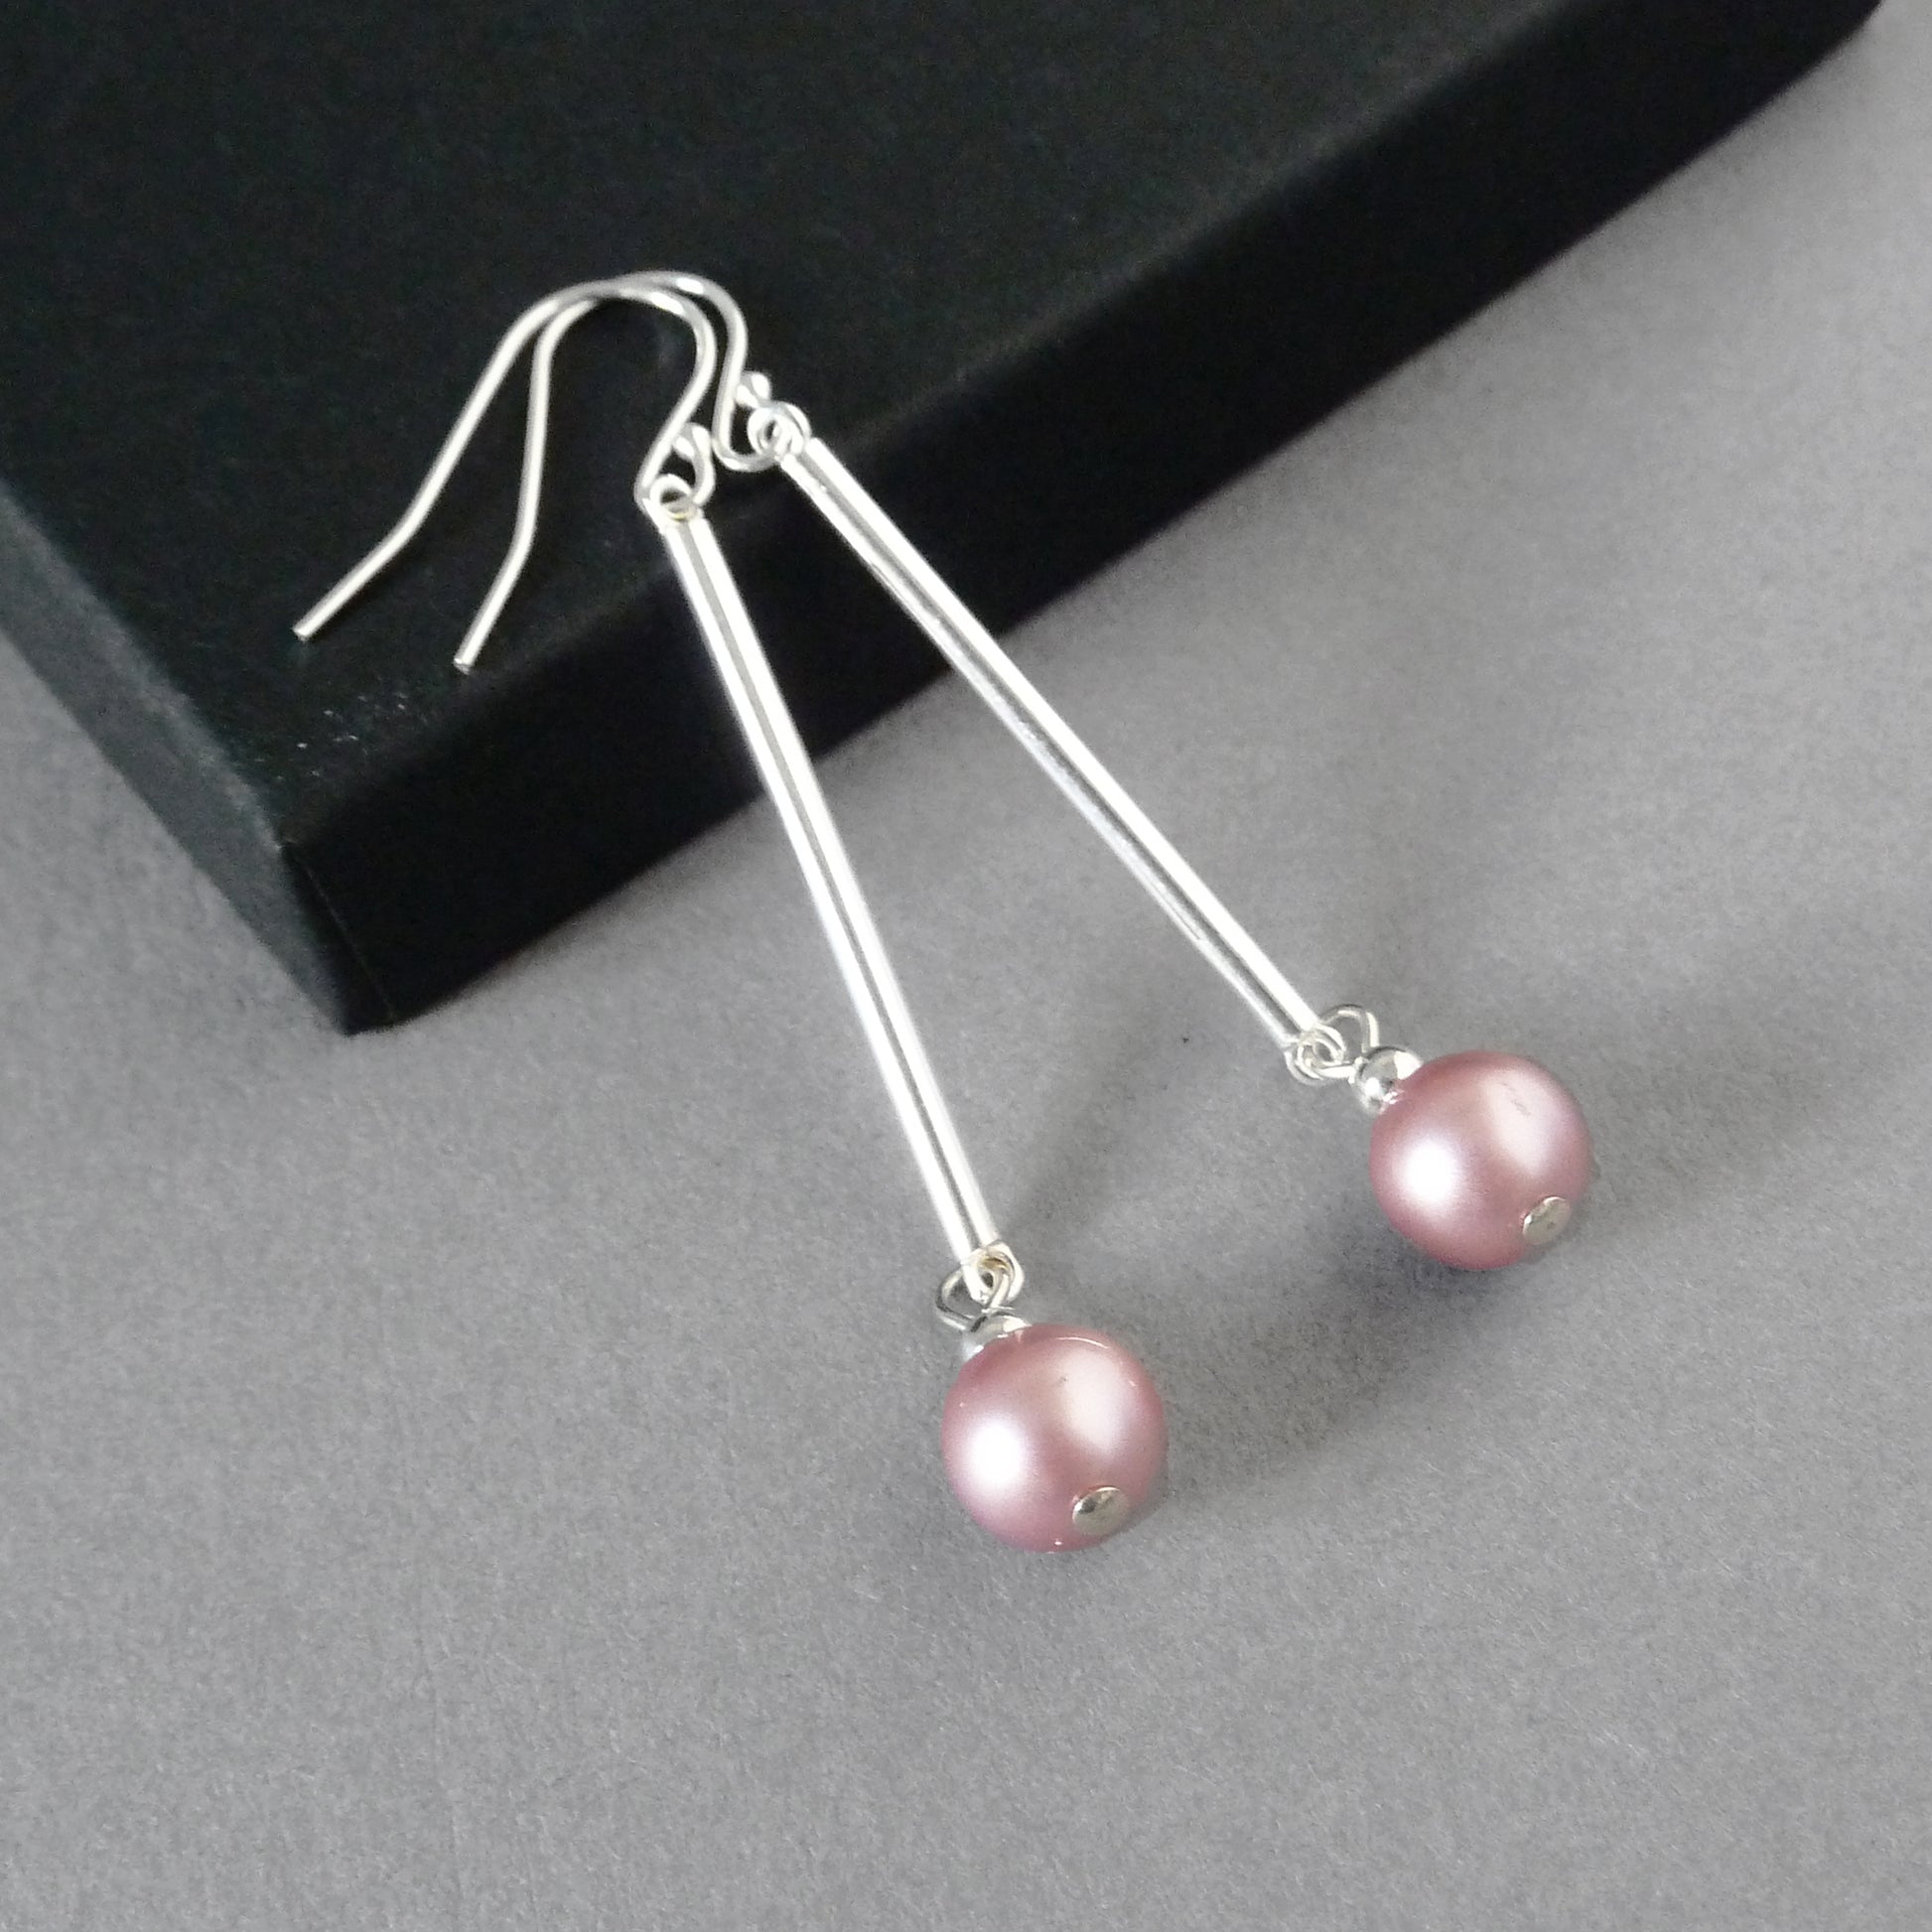 Dusty pink pearl drop earrings